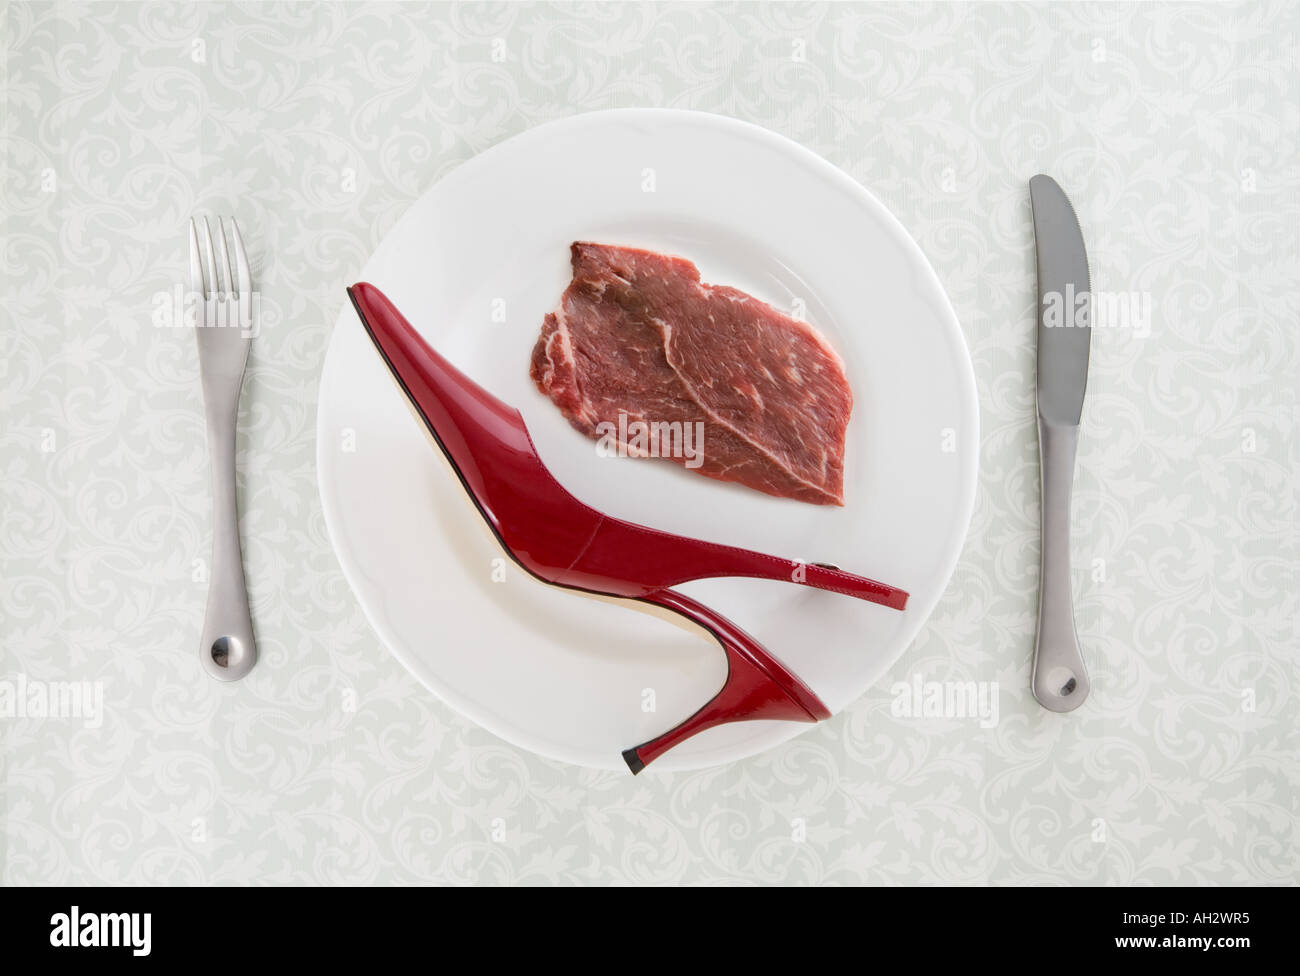 Rosso tacco alto con carne e utensili sulla piastra bianca, studio shot Foto Stock